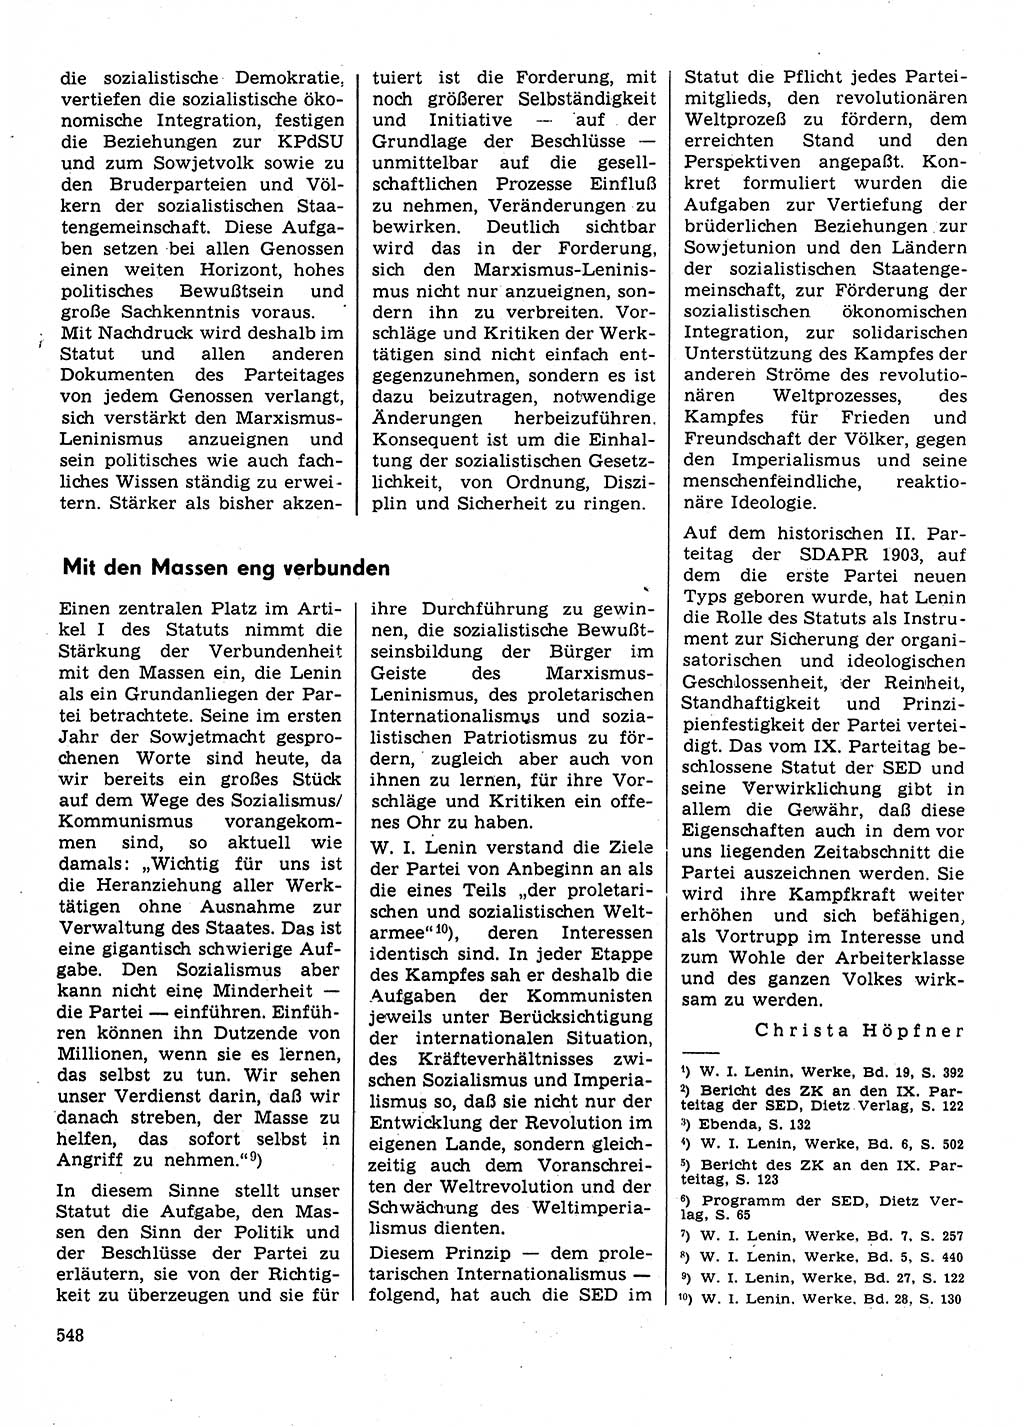 Neuer Weg (NW), Organ des Zentralkomitees (ZK) der SED (Sozialistische Einheitspartei Deutschlands) für Fragen des Parteilebens, 31. Jahrgang [Deutsche Demokratische Republik (DDR)] 1976, Seite 548 (NW ZK SED DDR 1976, S. 548)